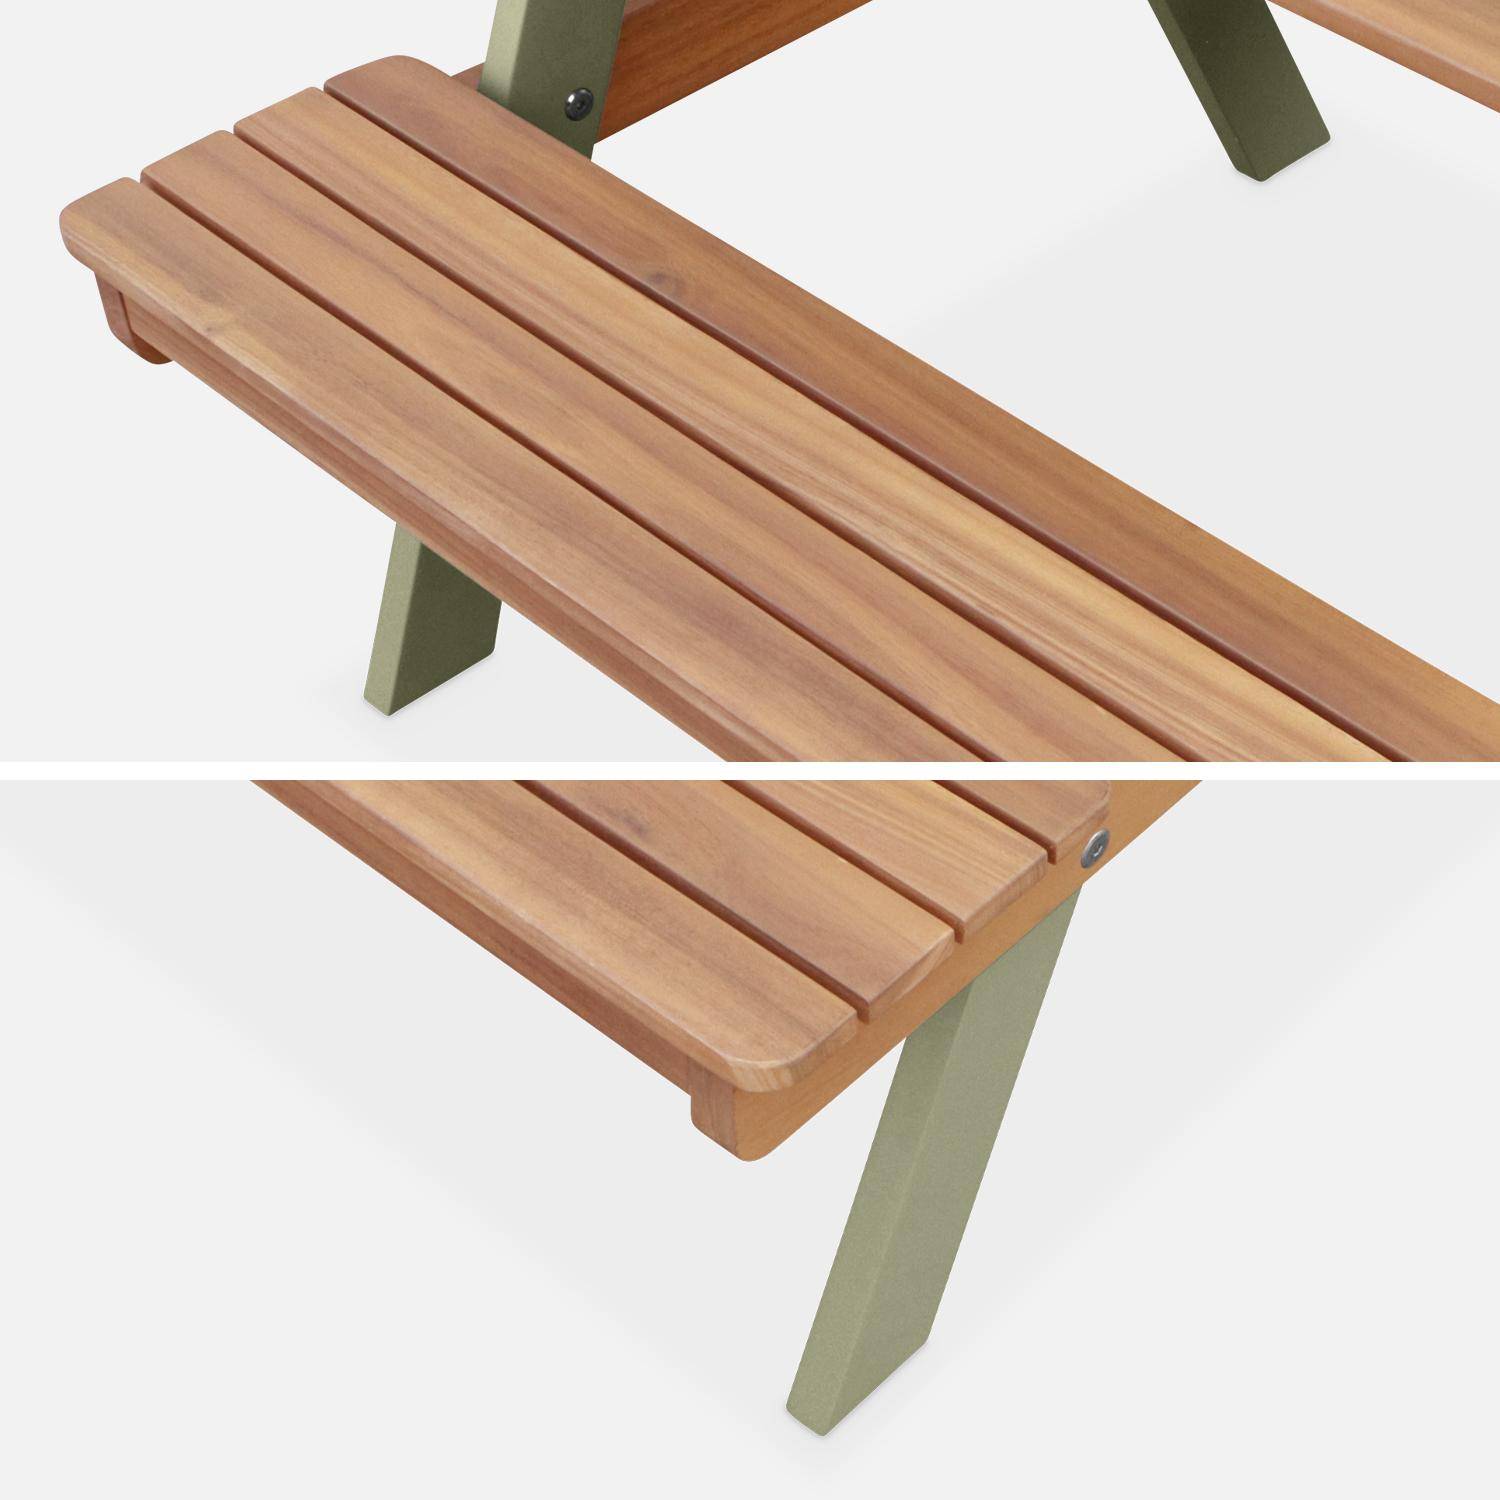 Picknicktisch aus hellem Akazienholz für Kinder, 2 Sitzplätze, naturfarben und graugrün Photo5